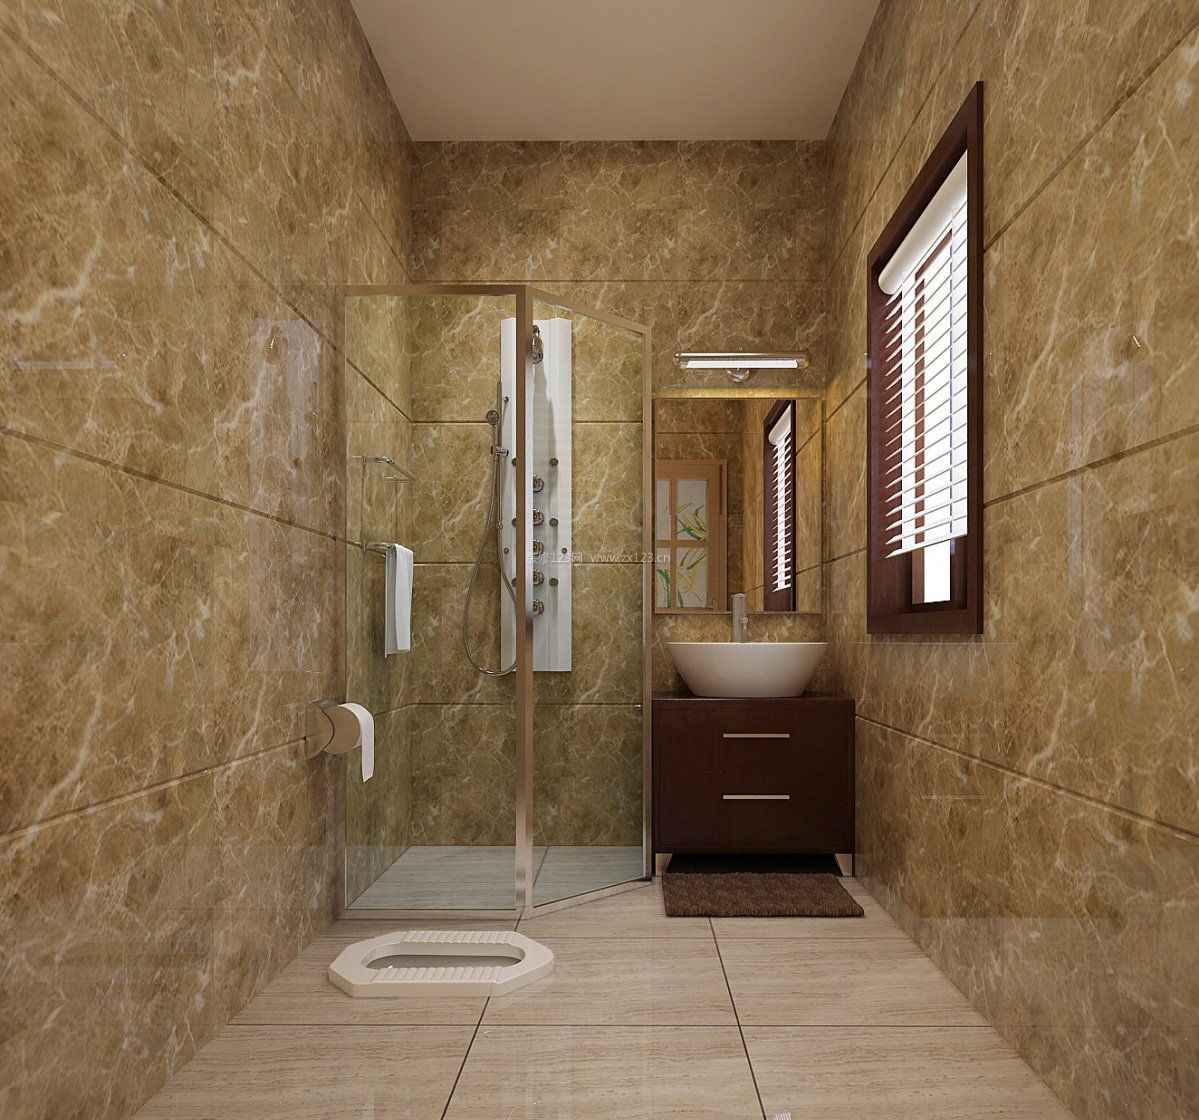 中式别墅厕所墙面瓷砖效果图